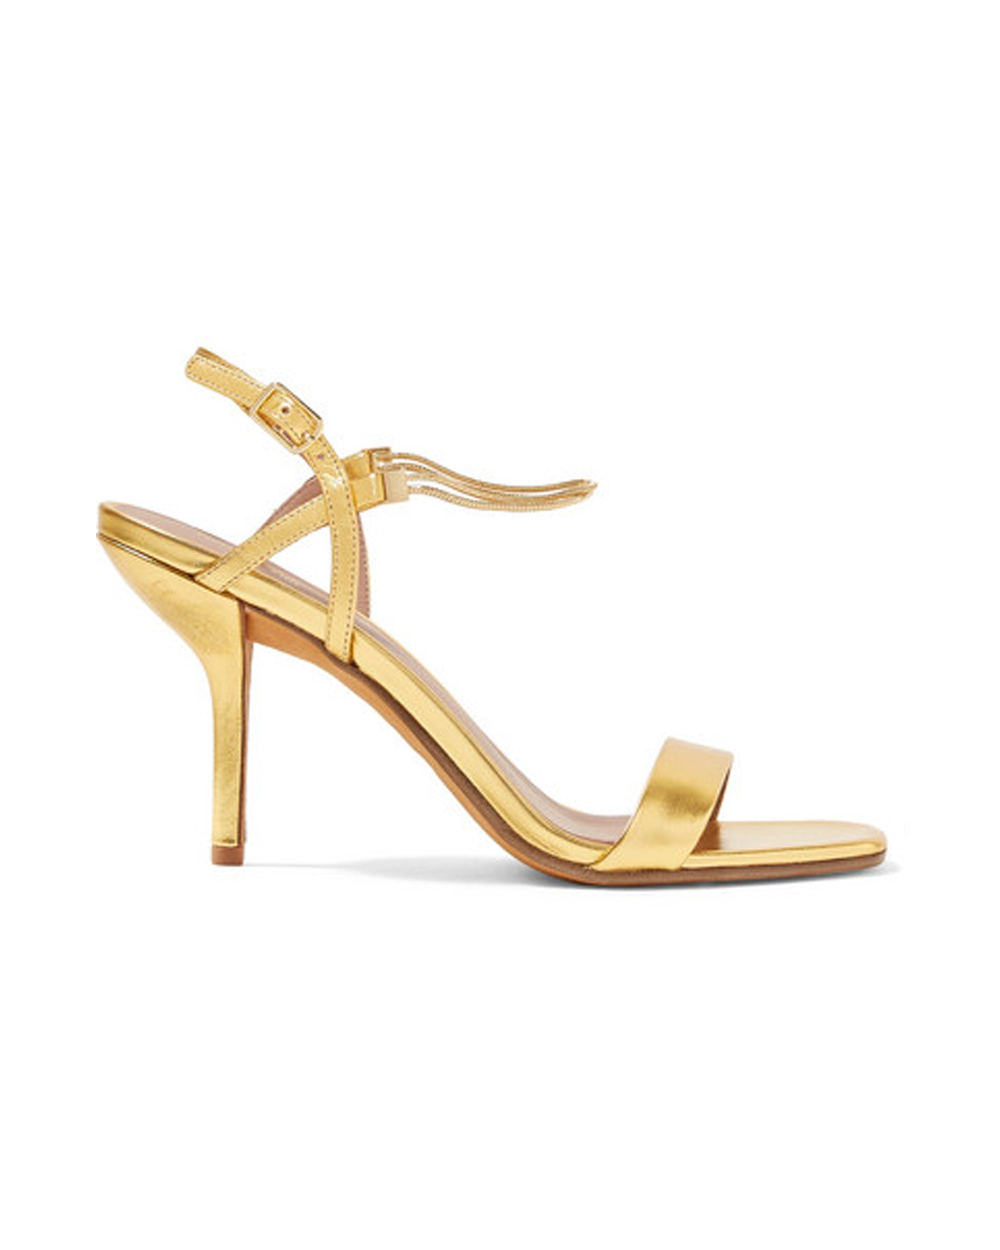 Diane von Furstenberg heels, $375 USD from Net-a-Porter